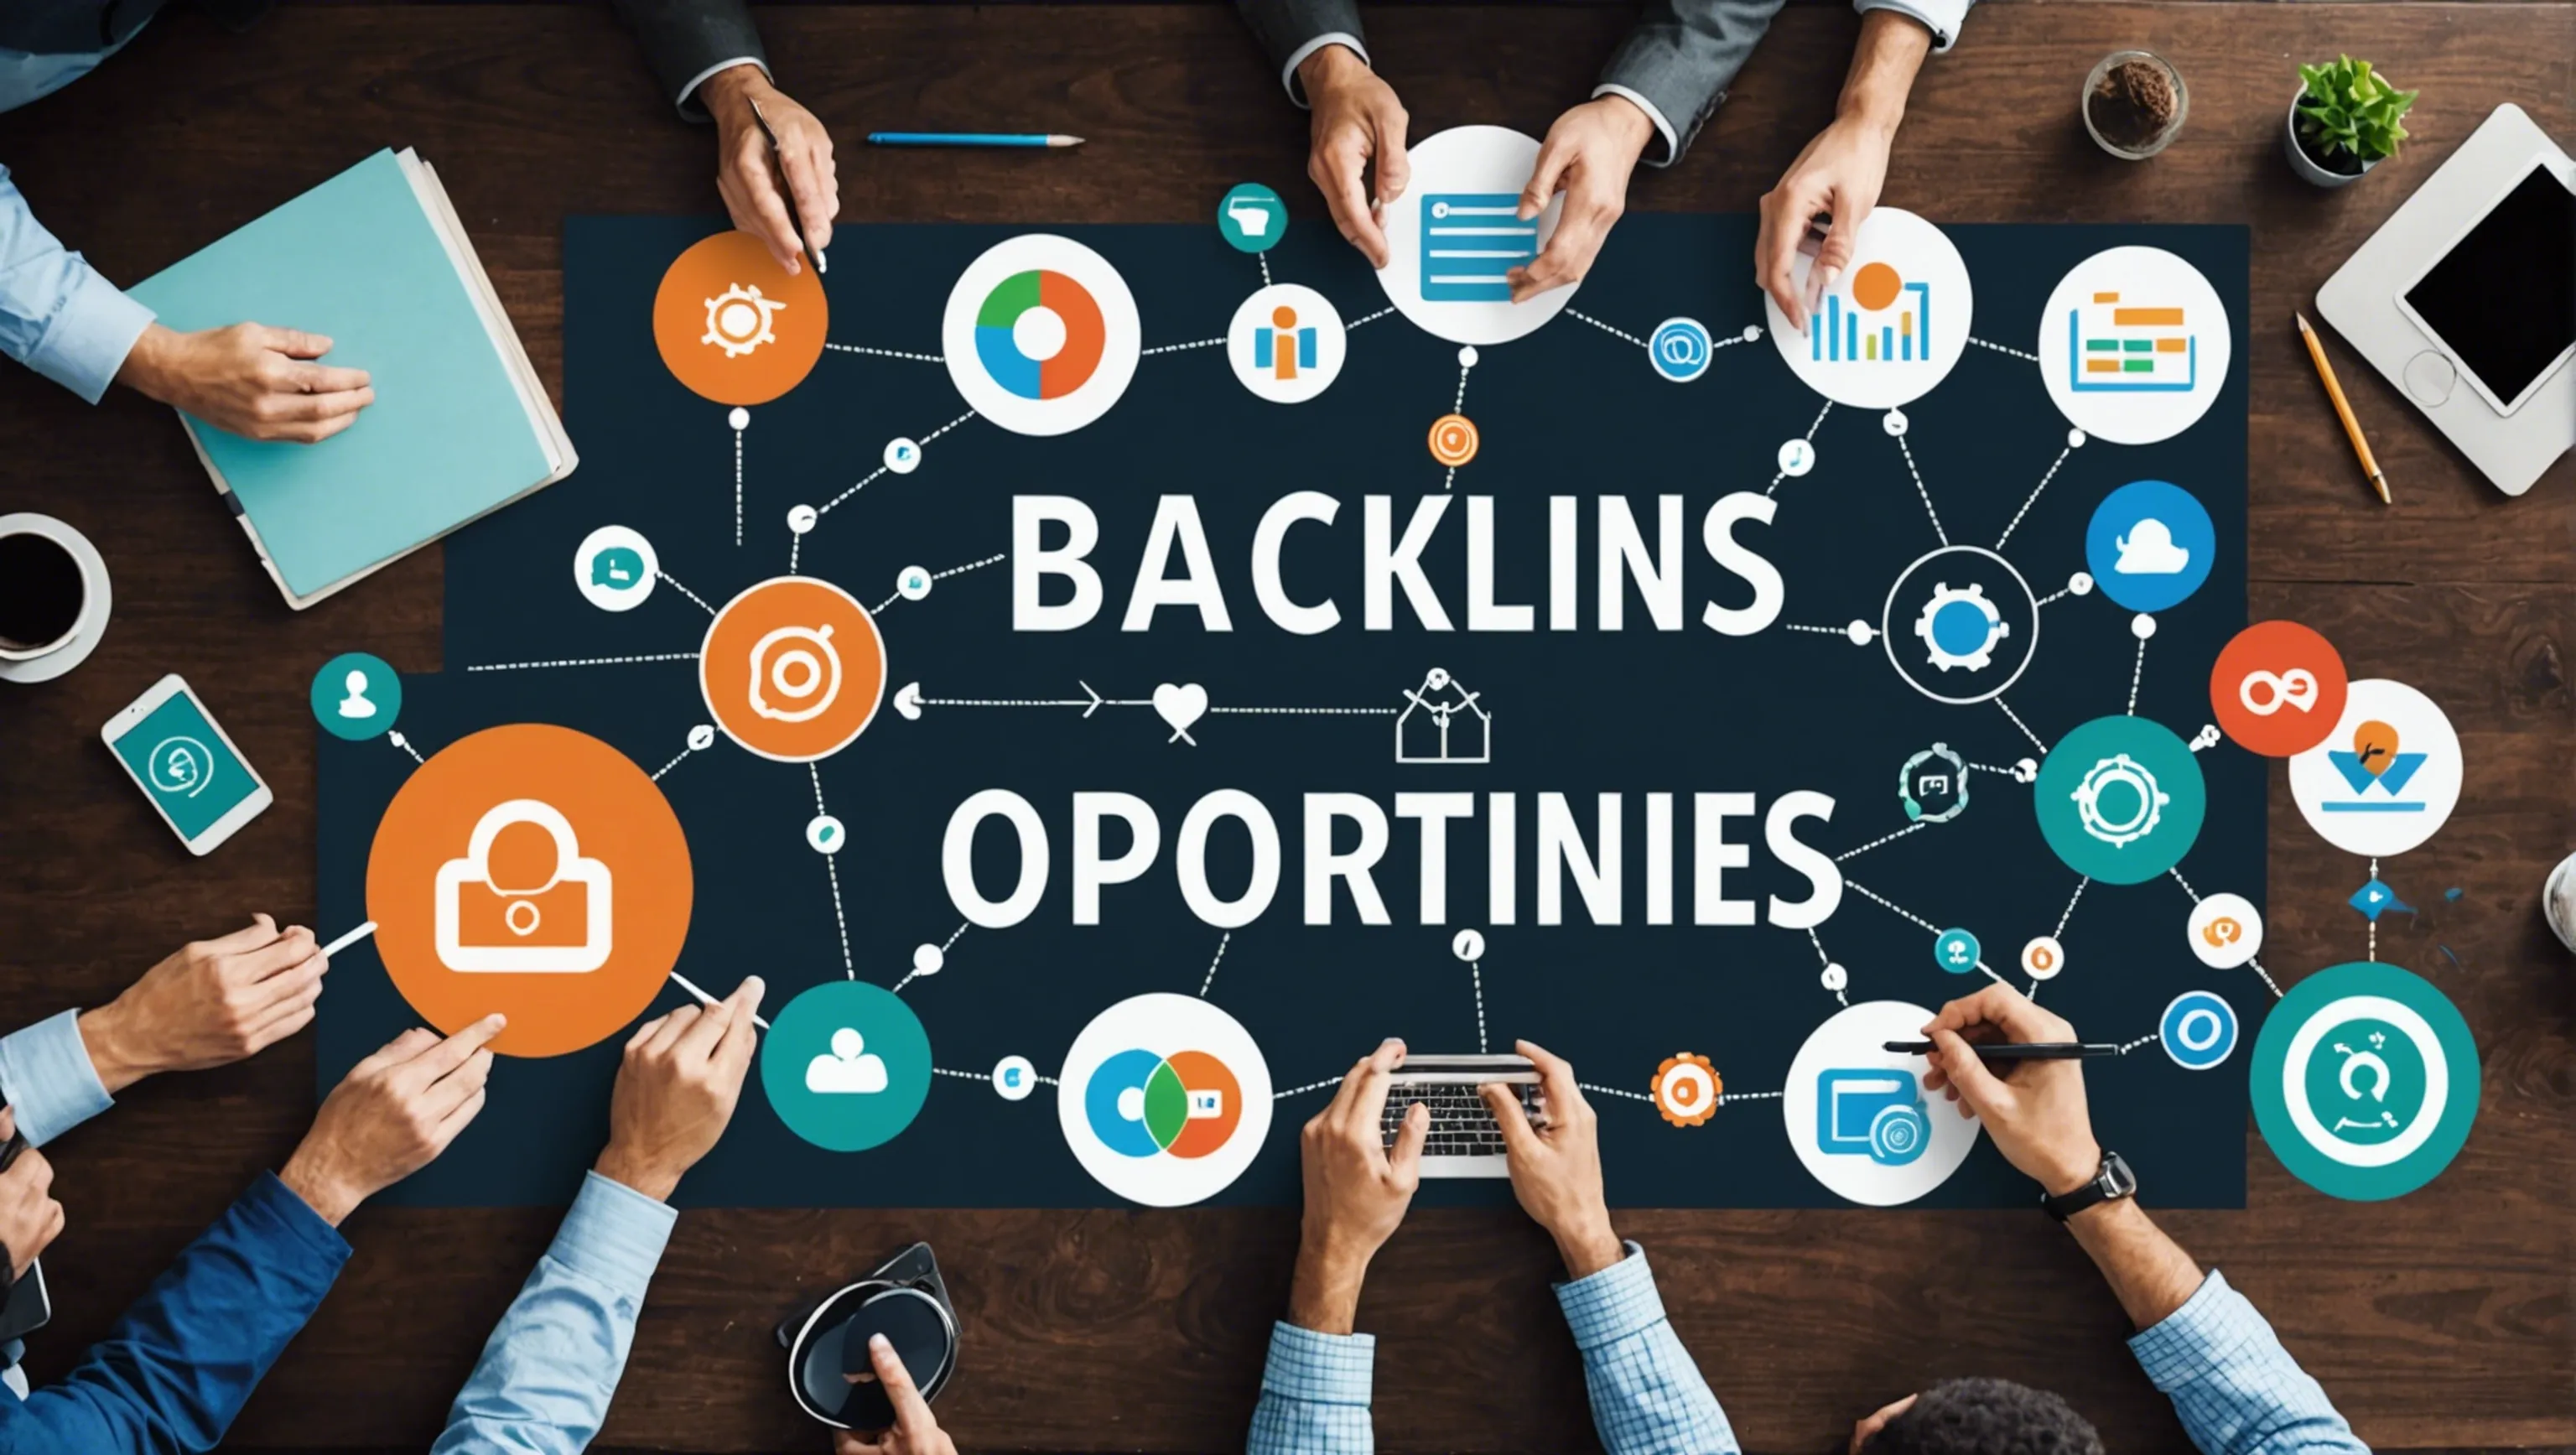 Partnership opportunities for backlinks